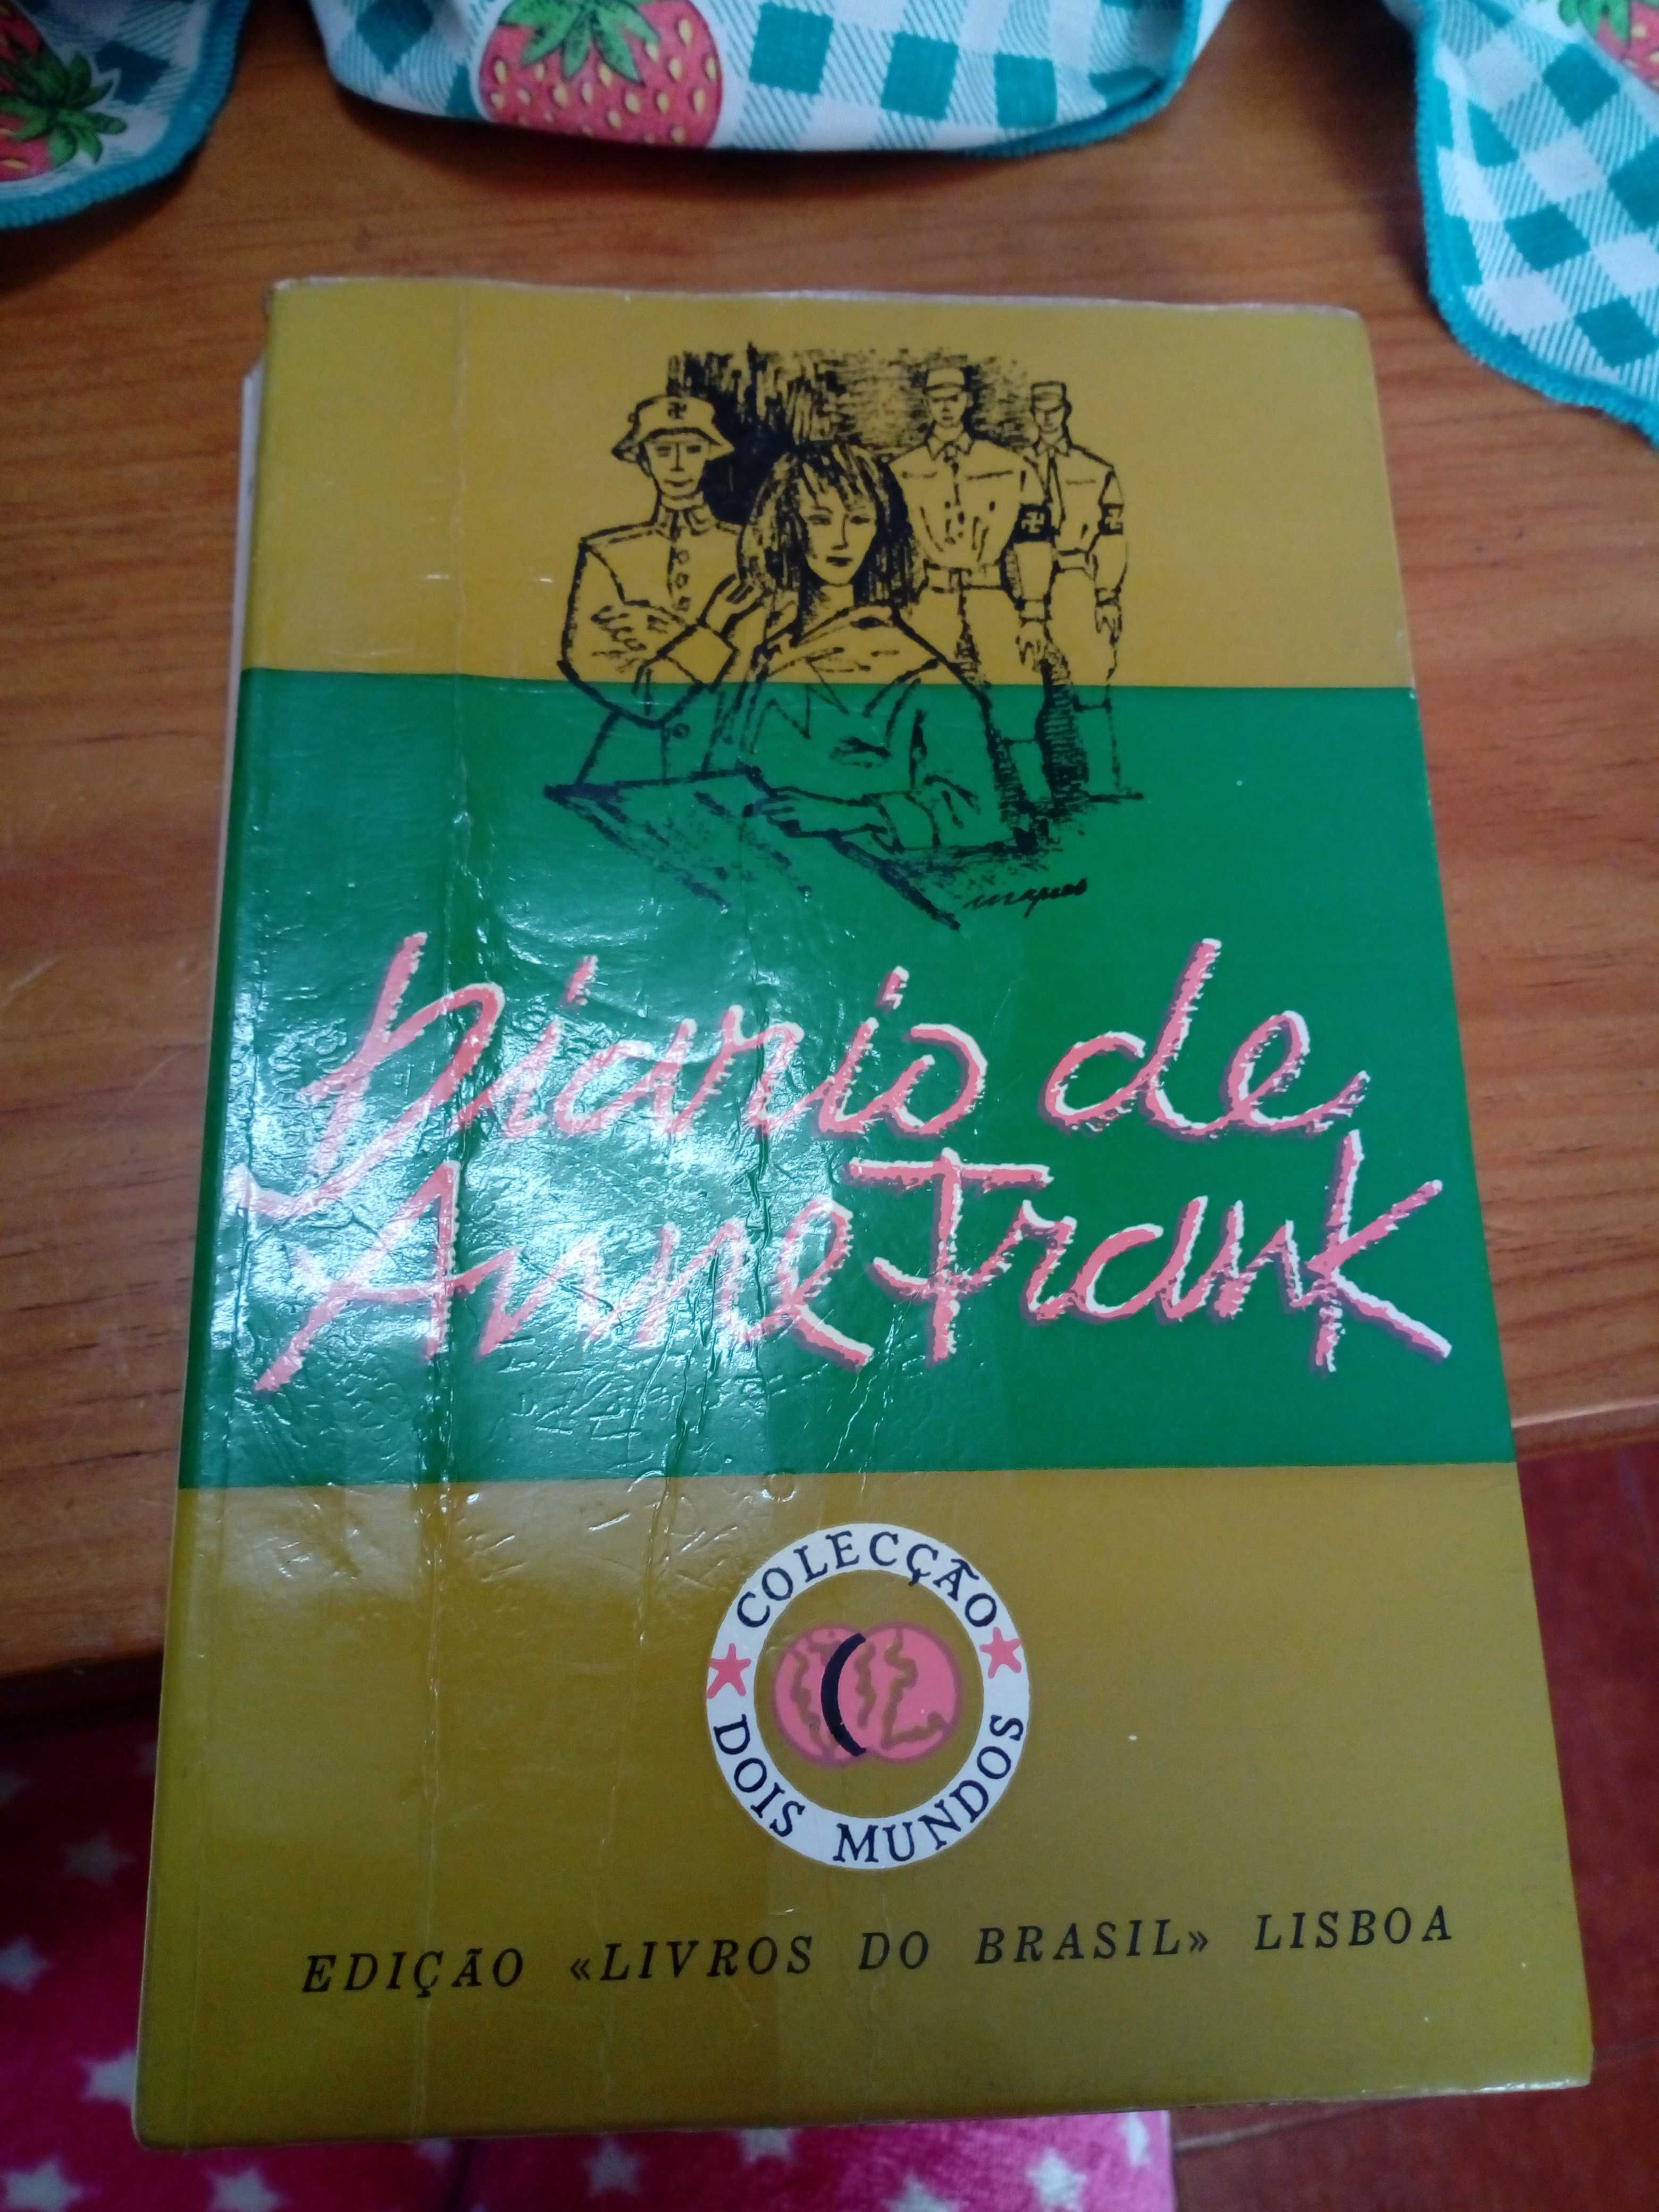 Livro " Diario de Anne Frank" coleção dois mundos.